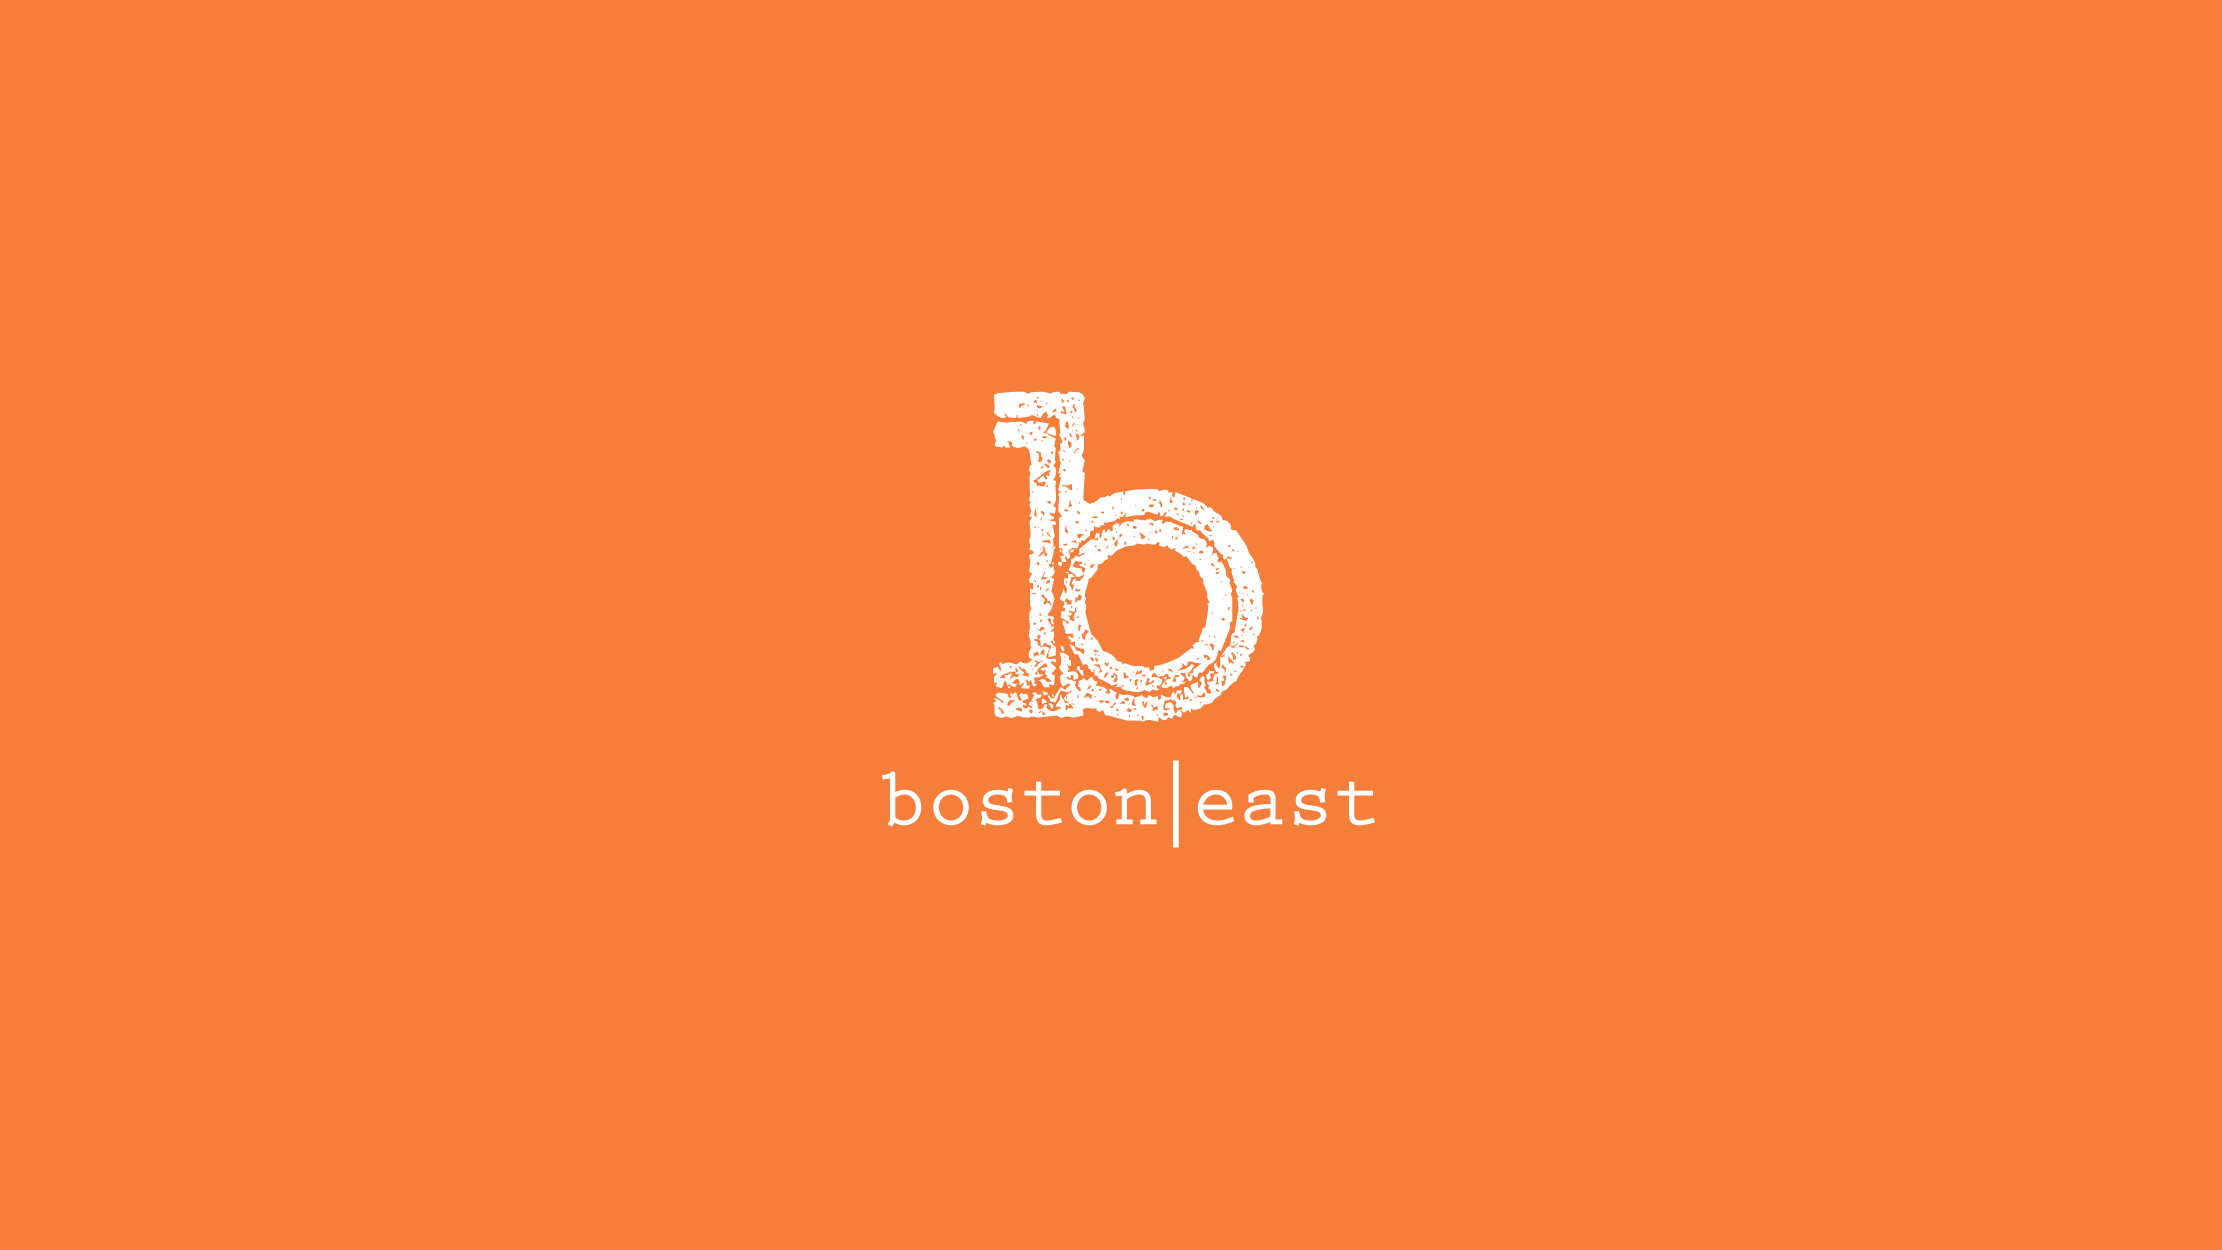 boston east logo on orange background